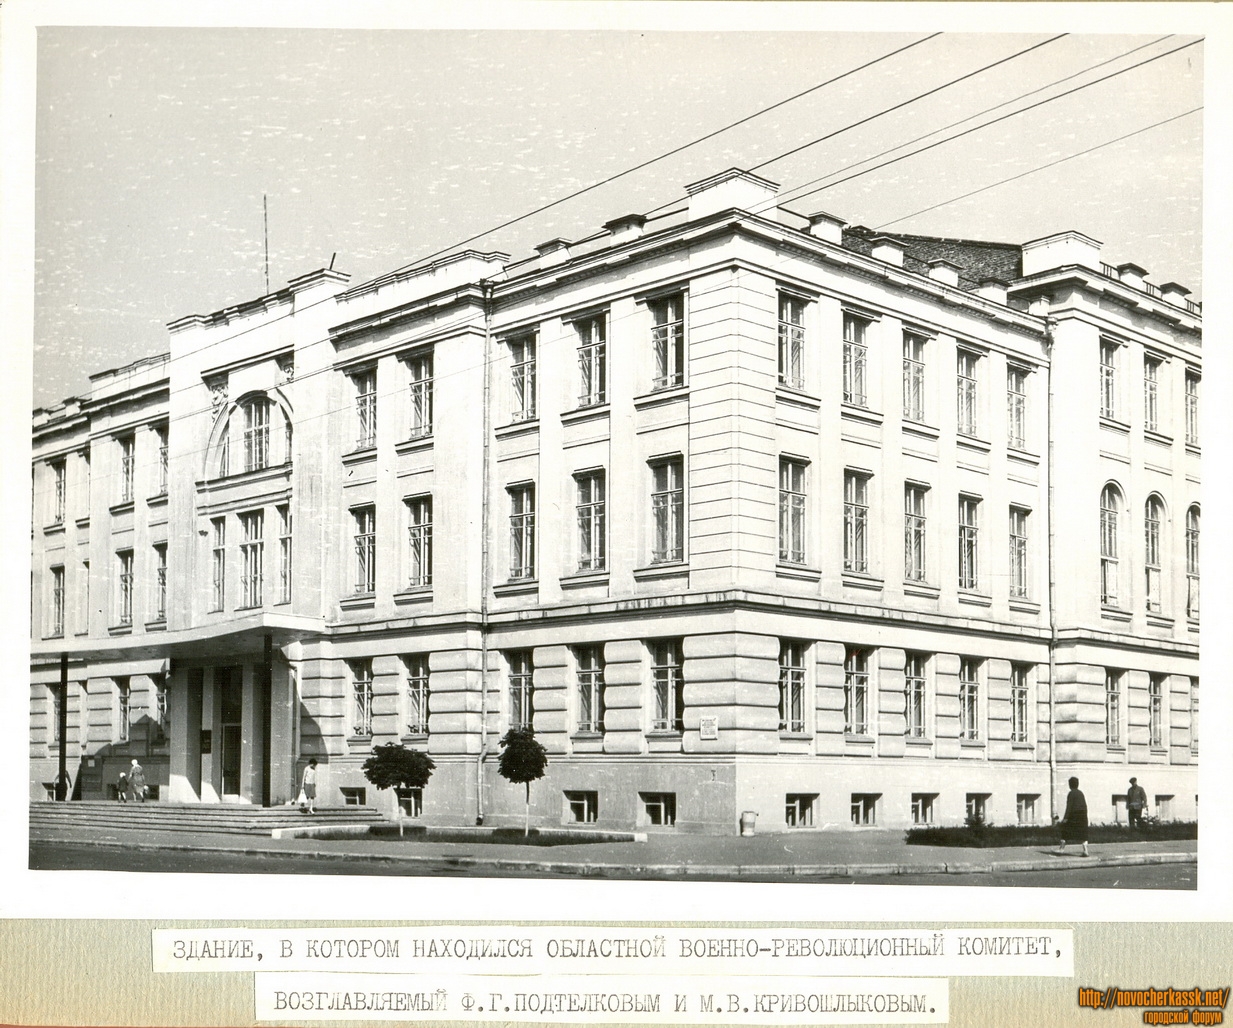 Новочеркасск: Здание, в котором находился областной военно-революционный комитет (здание театра)